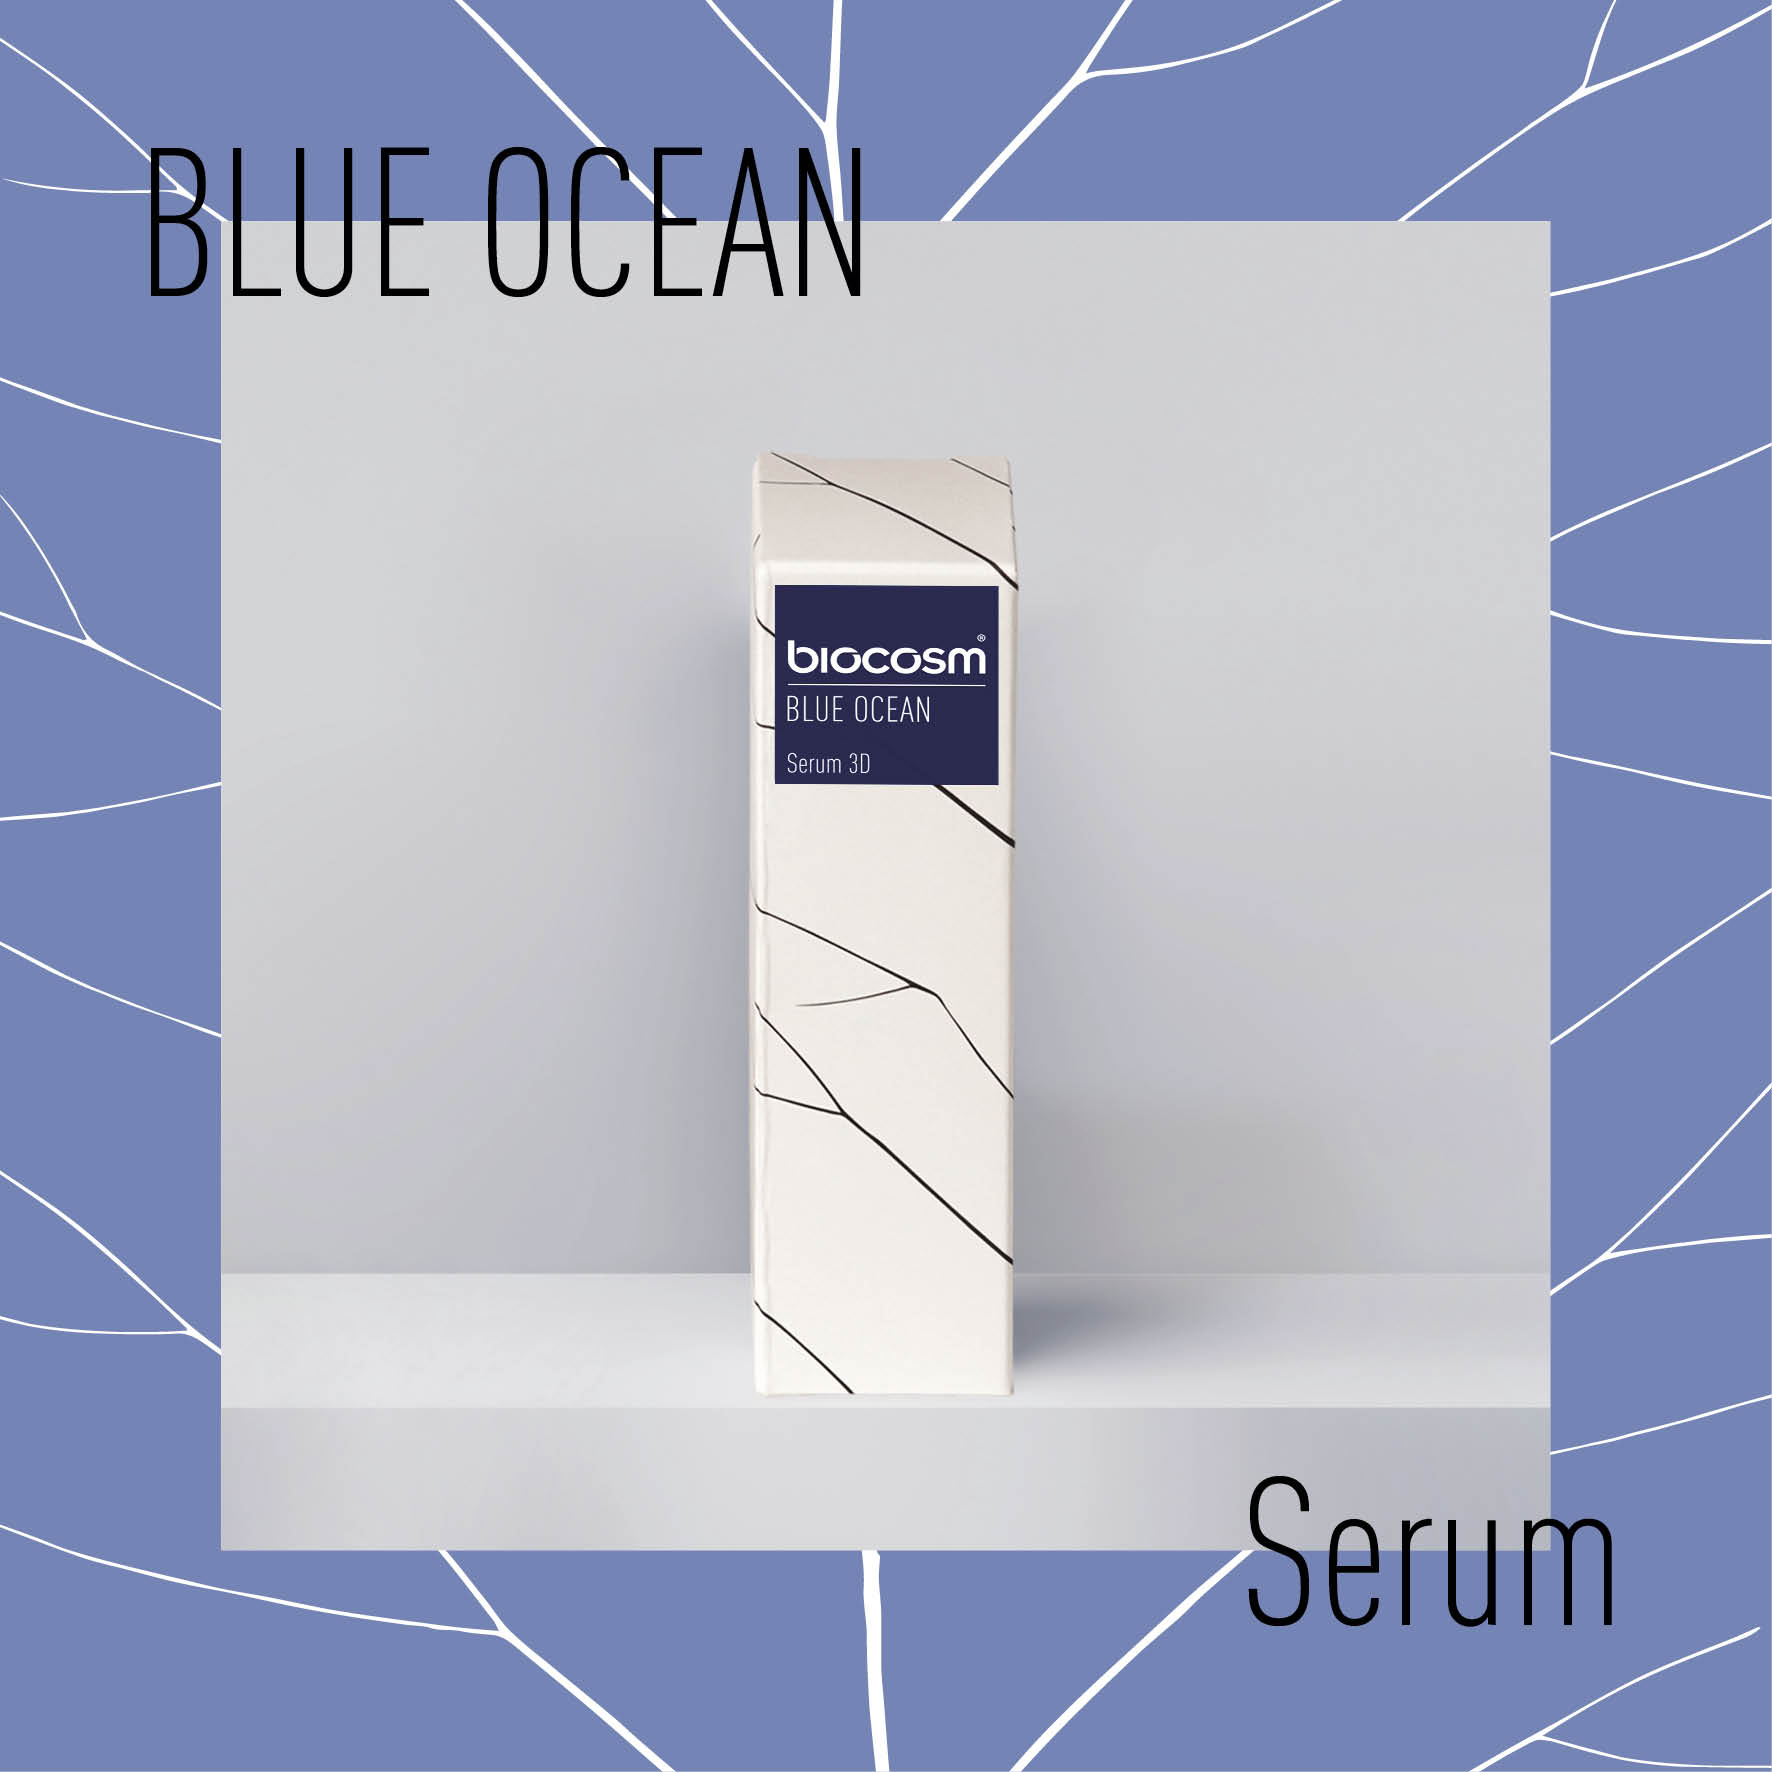 Blue Ocean Serum 3D: rivoluzionaria soluzione antirughe basata su tre vescicole di Niosoma con diverse dimensioni delle particelle.